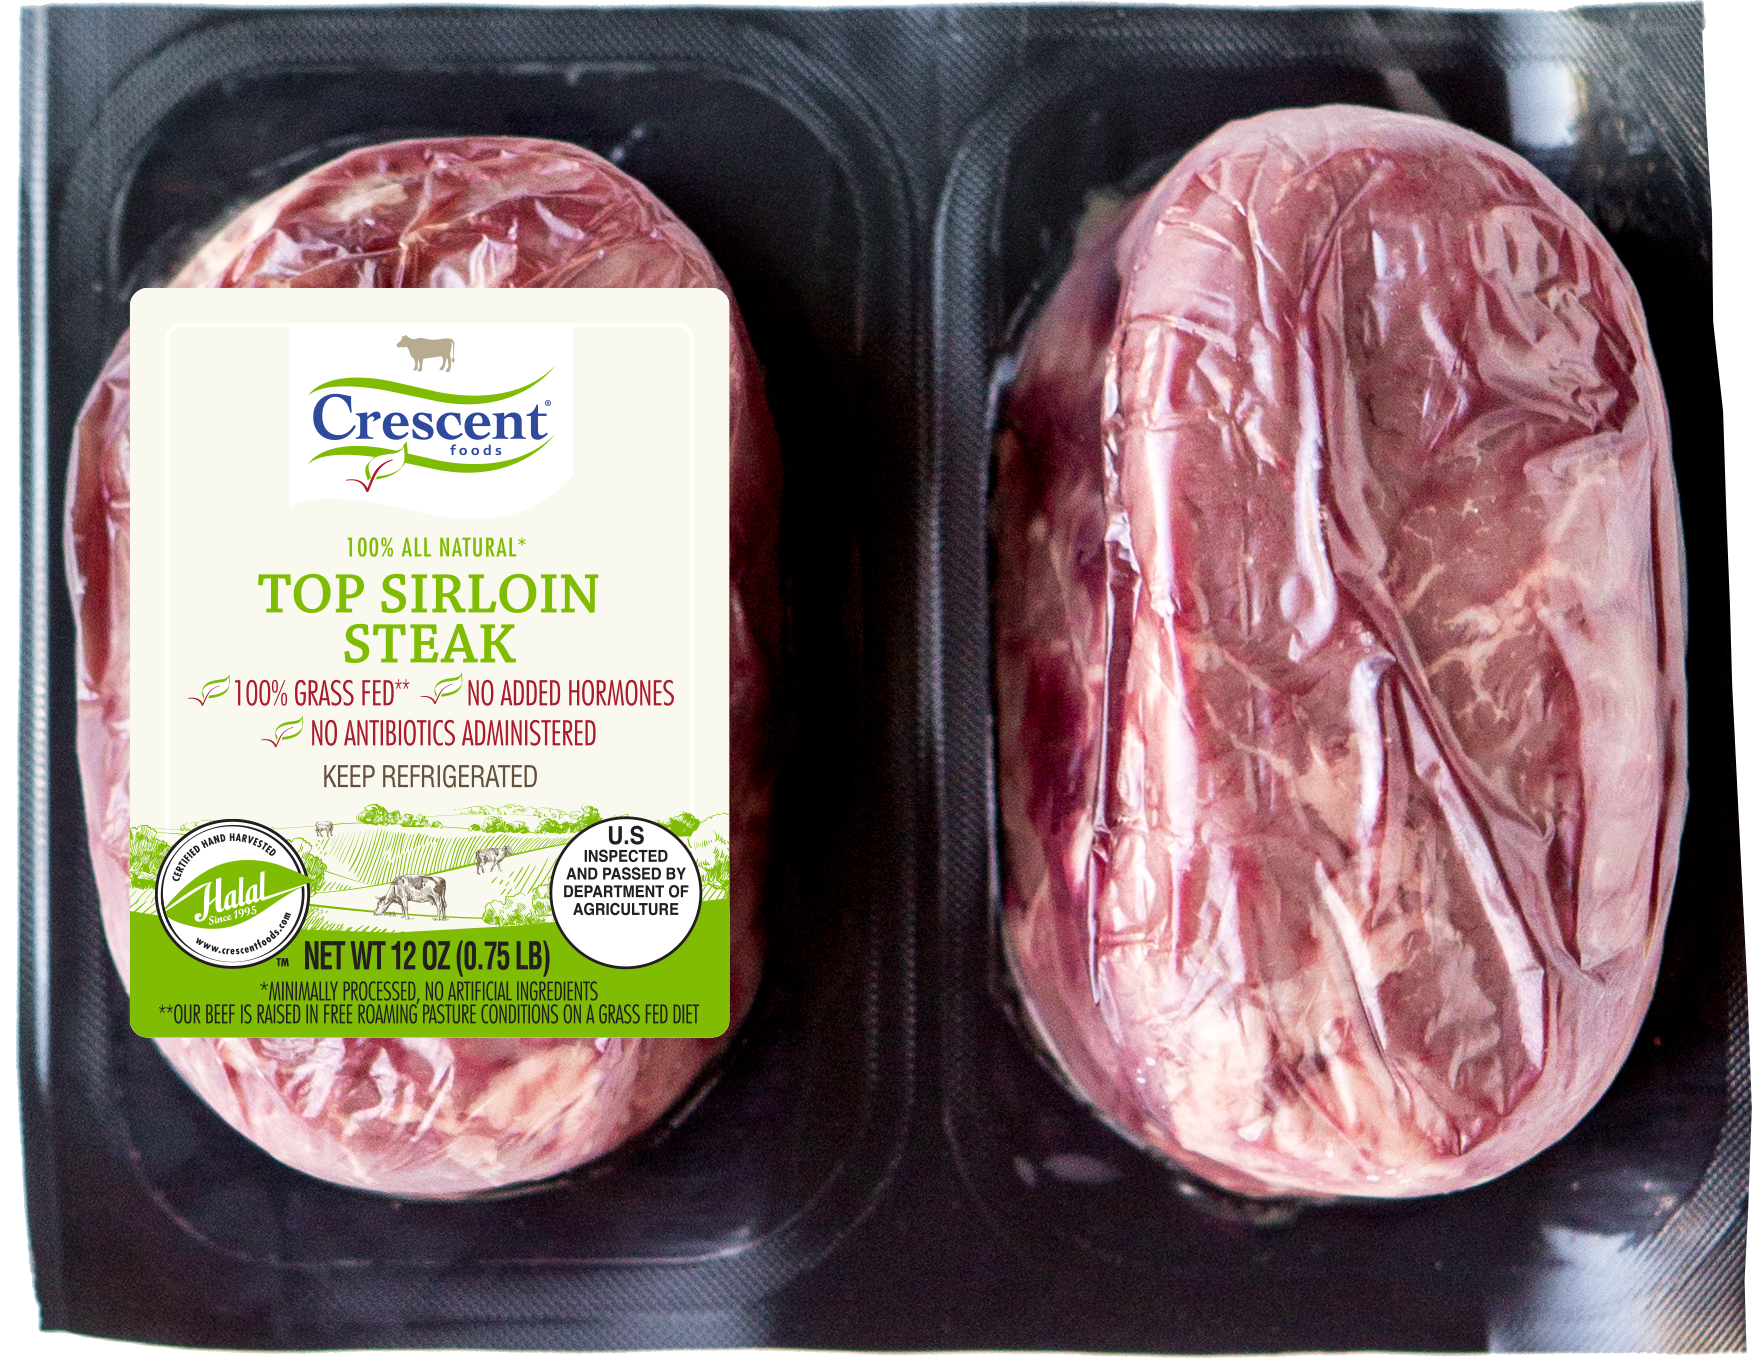 Crescent Top Sirloin Steak Grass Fed Plated